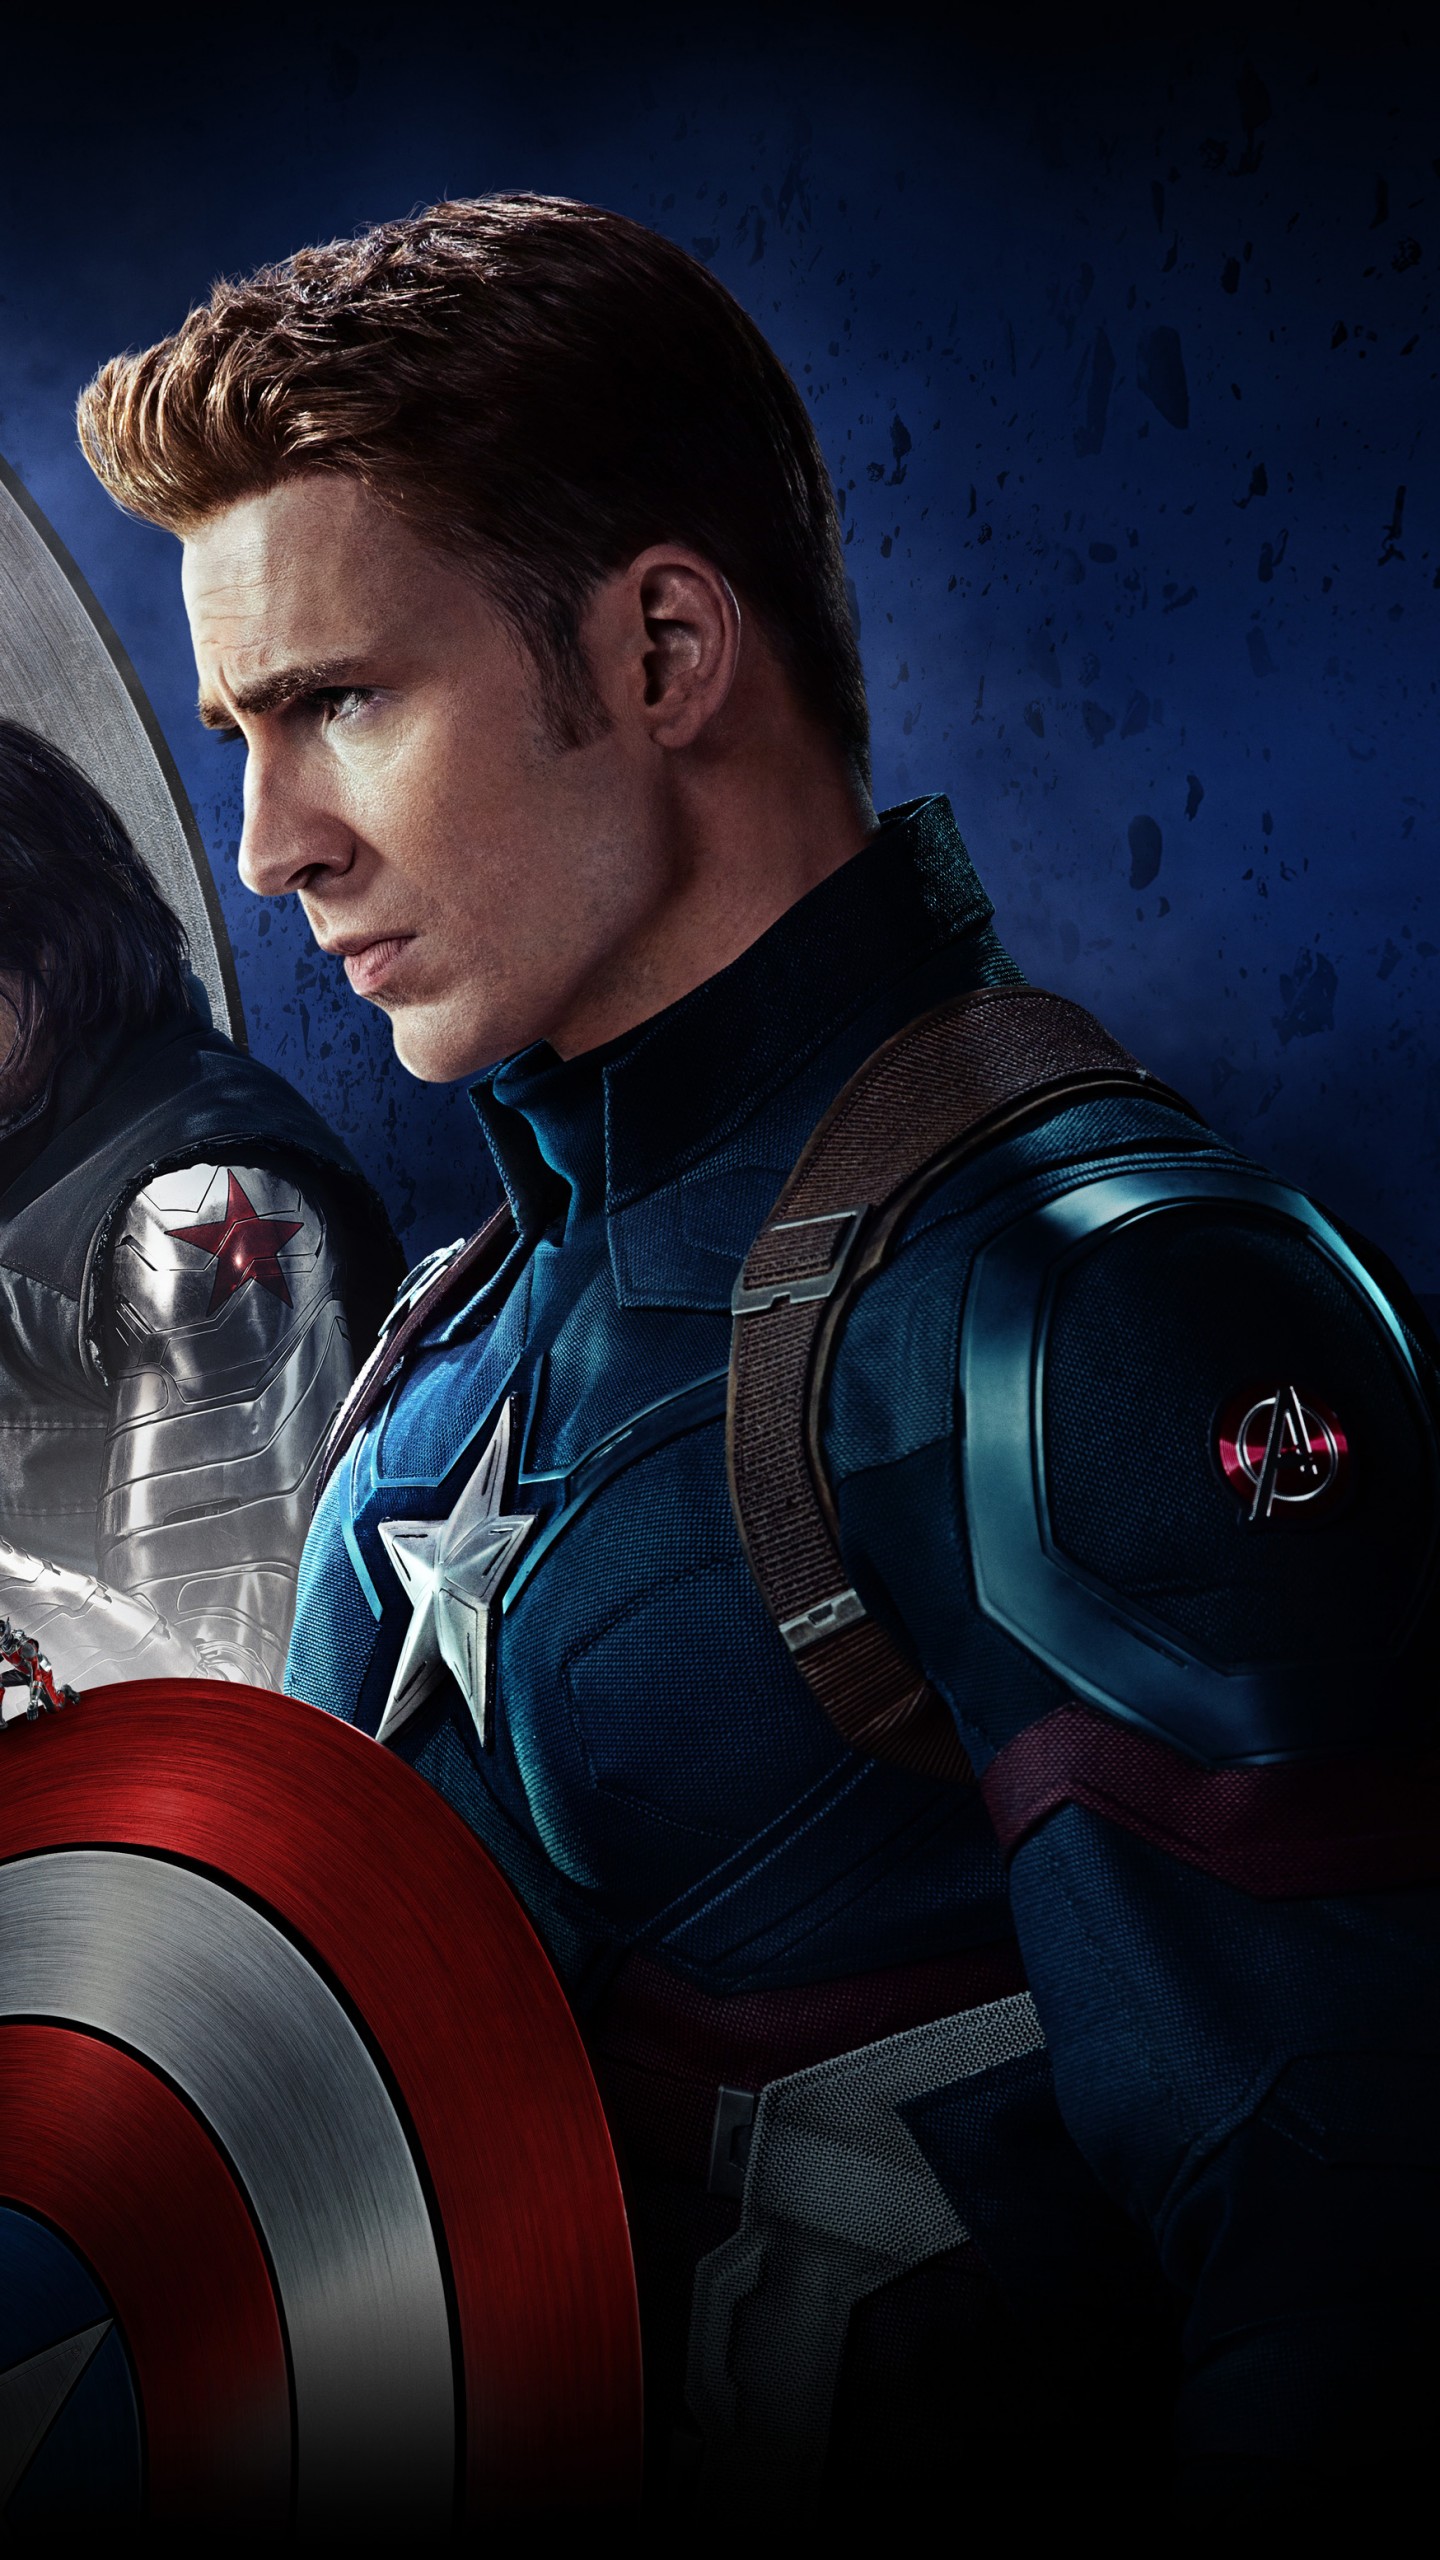 Avengers Civil War Hd - 1440x2560 Wallpaper 